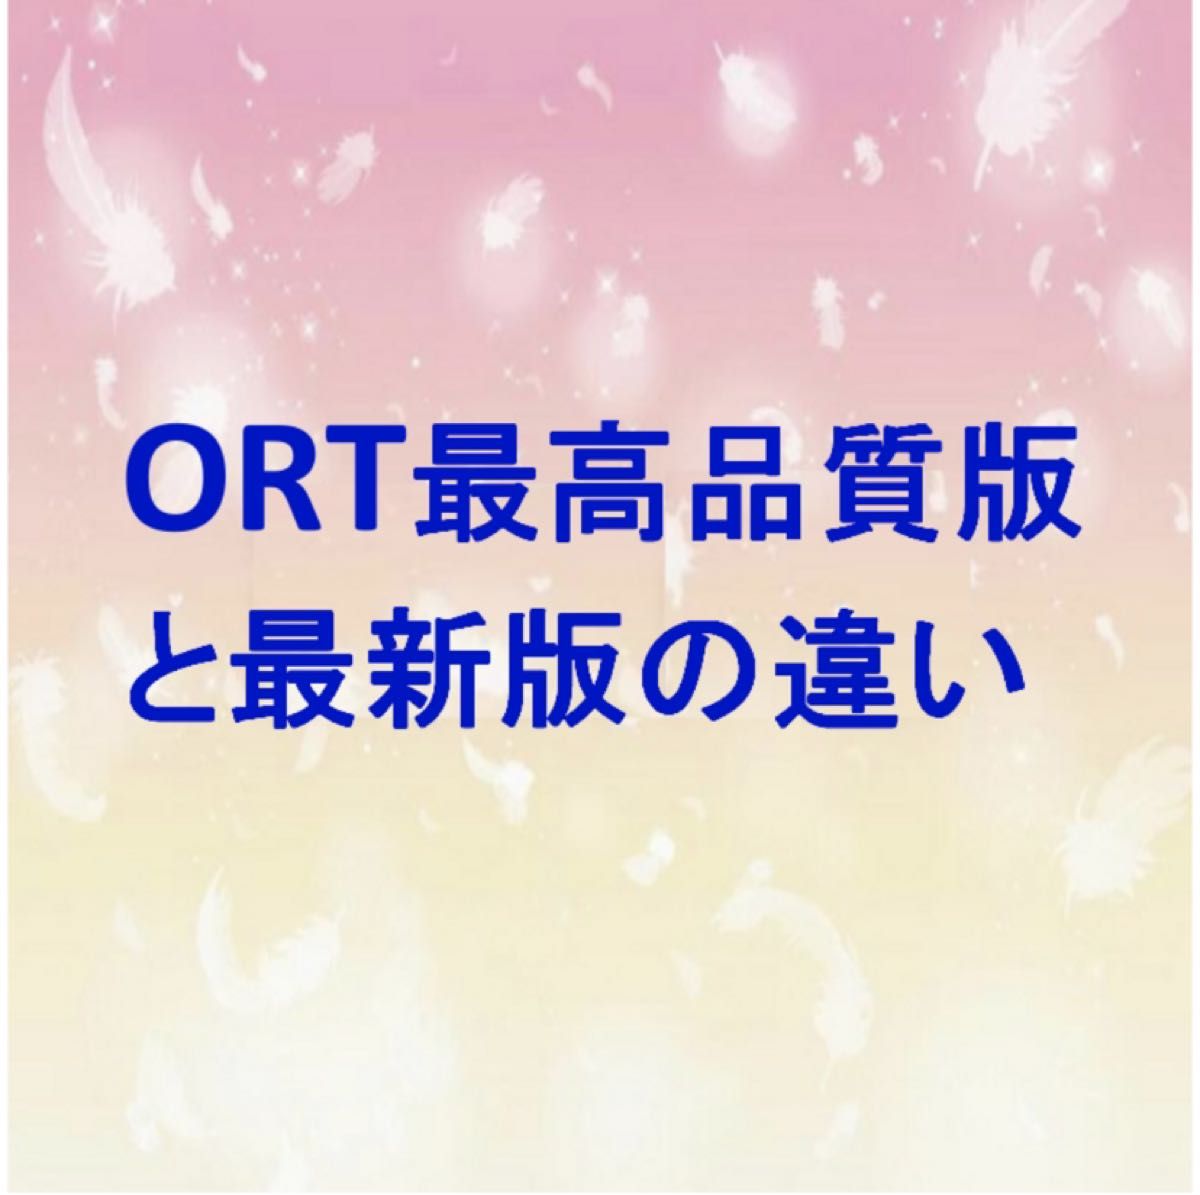 ORT最高品質版と最新版の違い